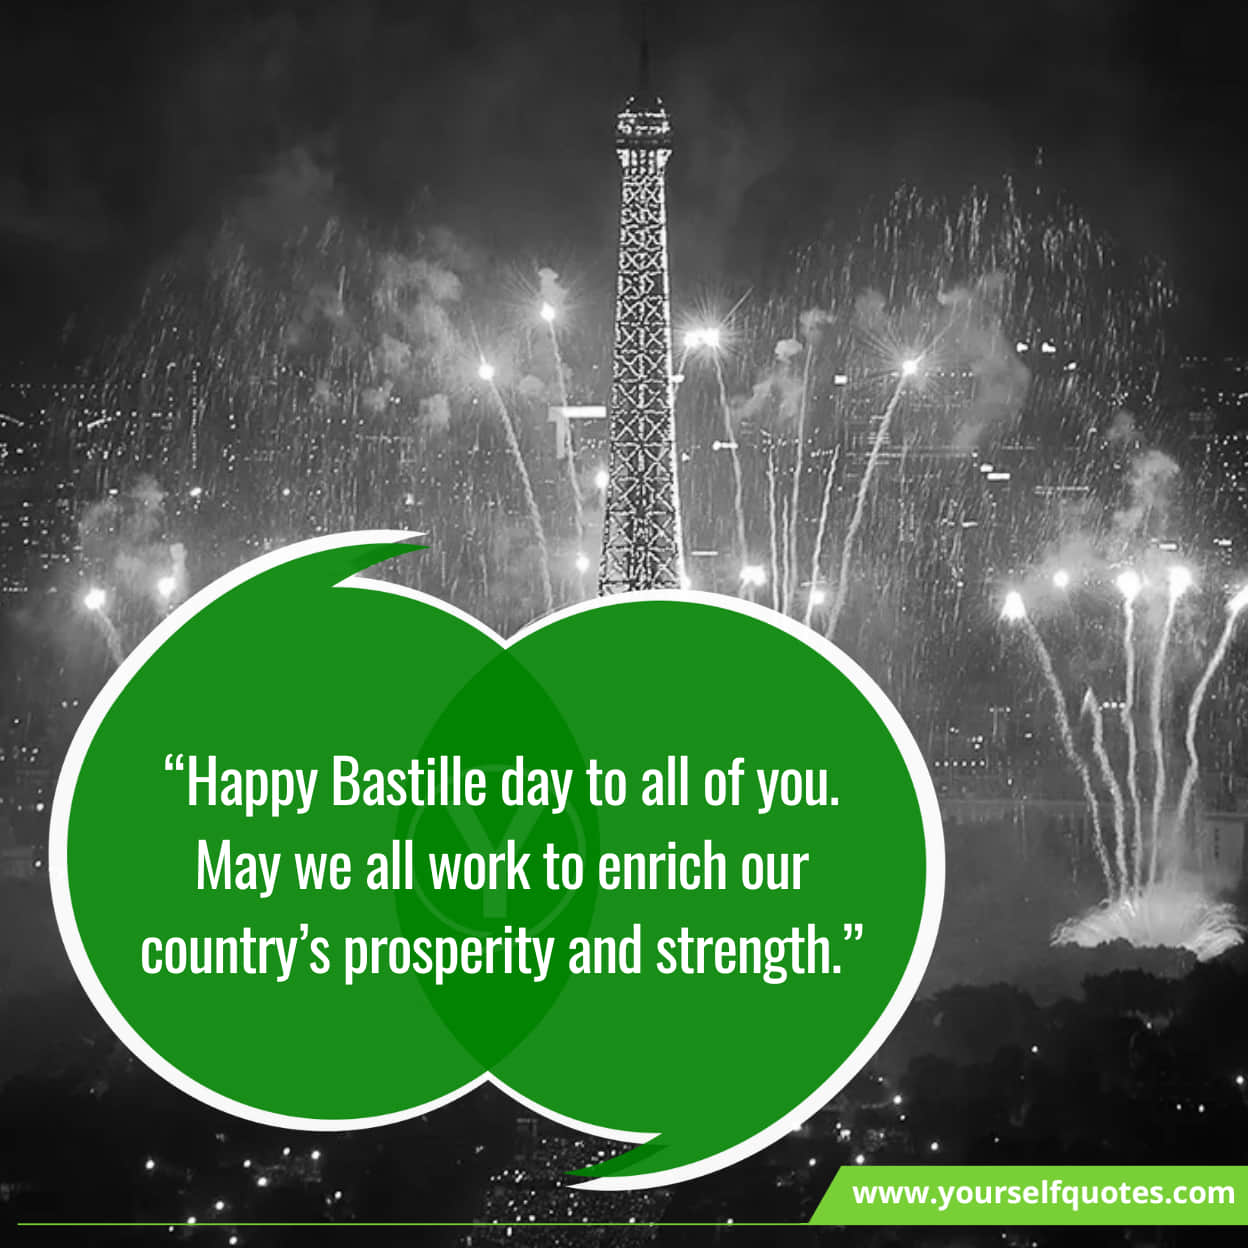 Inspiring Messages For Bastille Day